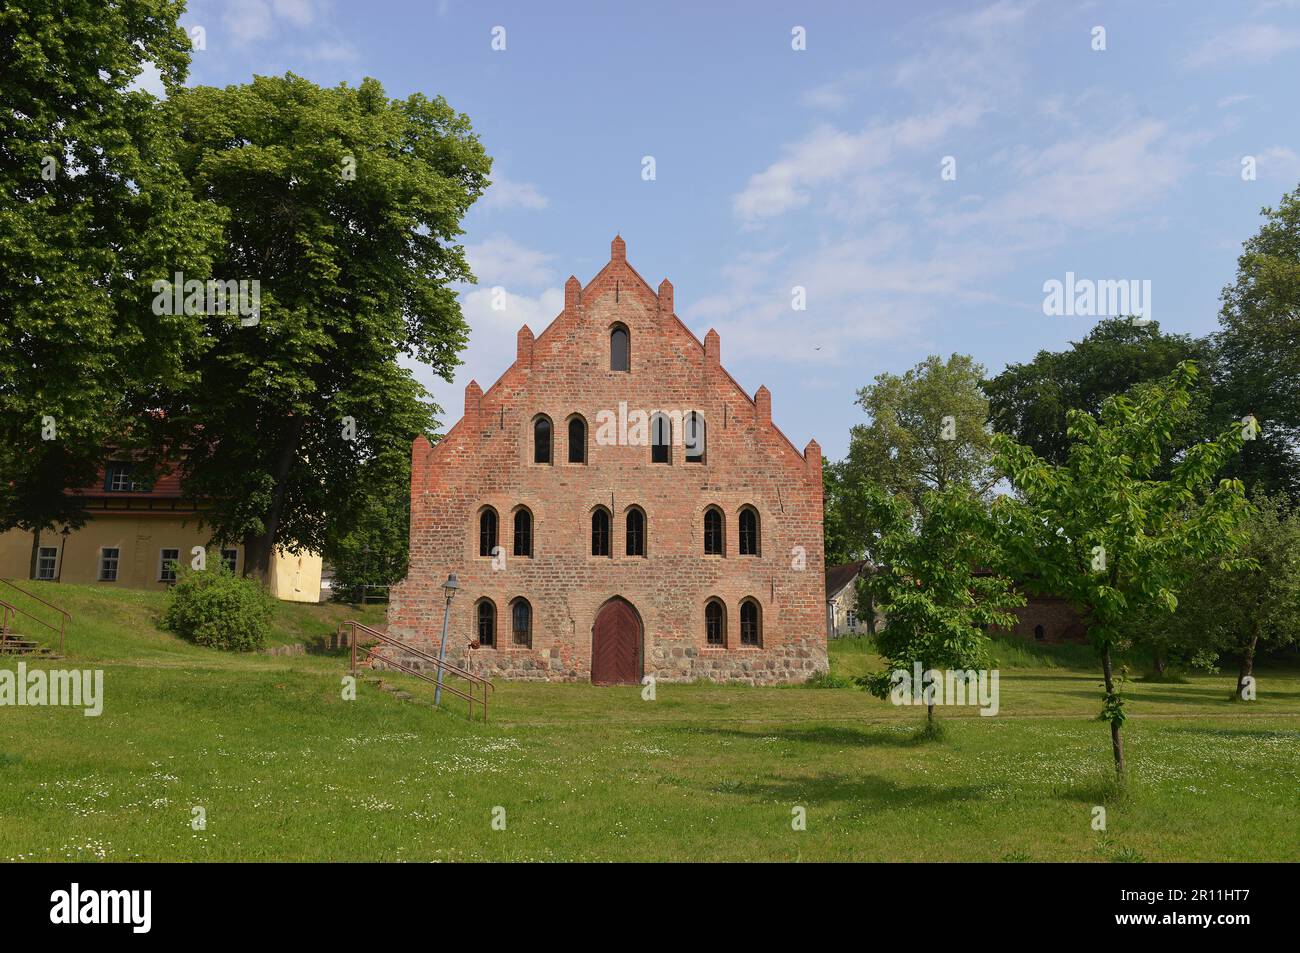 Granary, Kloster Lehnin, Brandebourg, Allemagne Banque D'Images